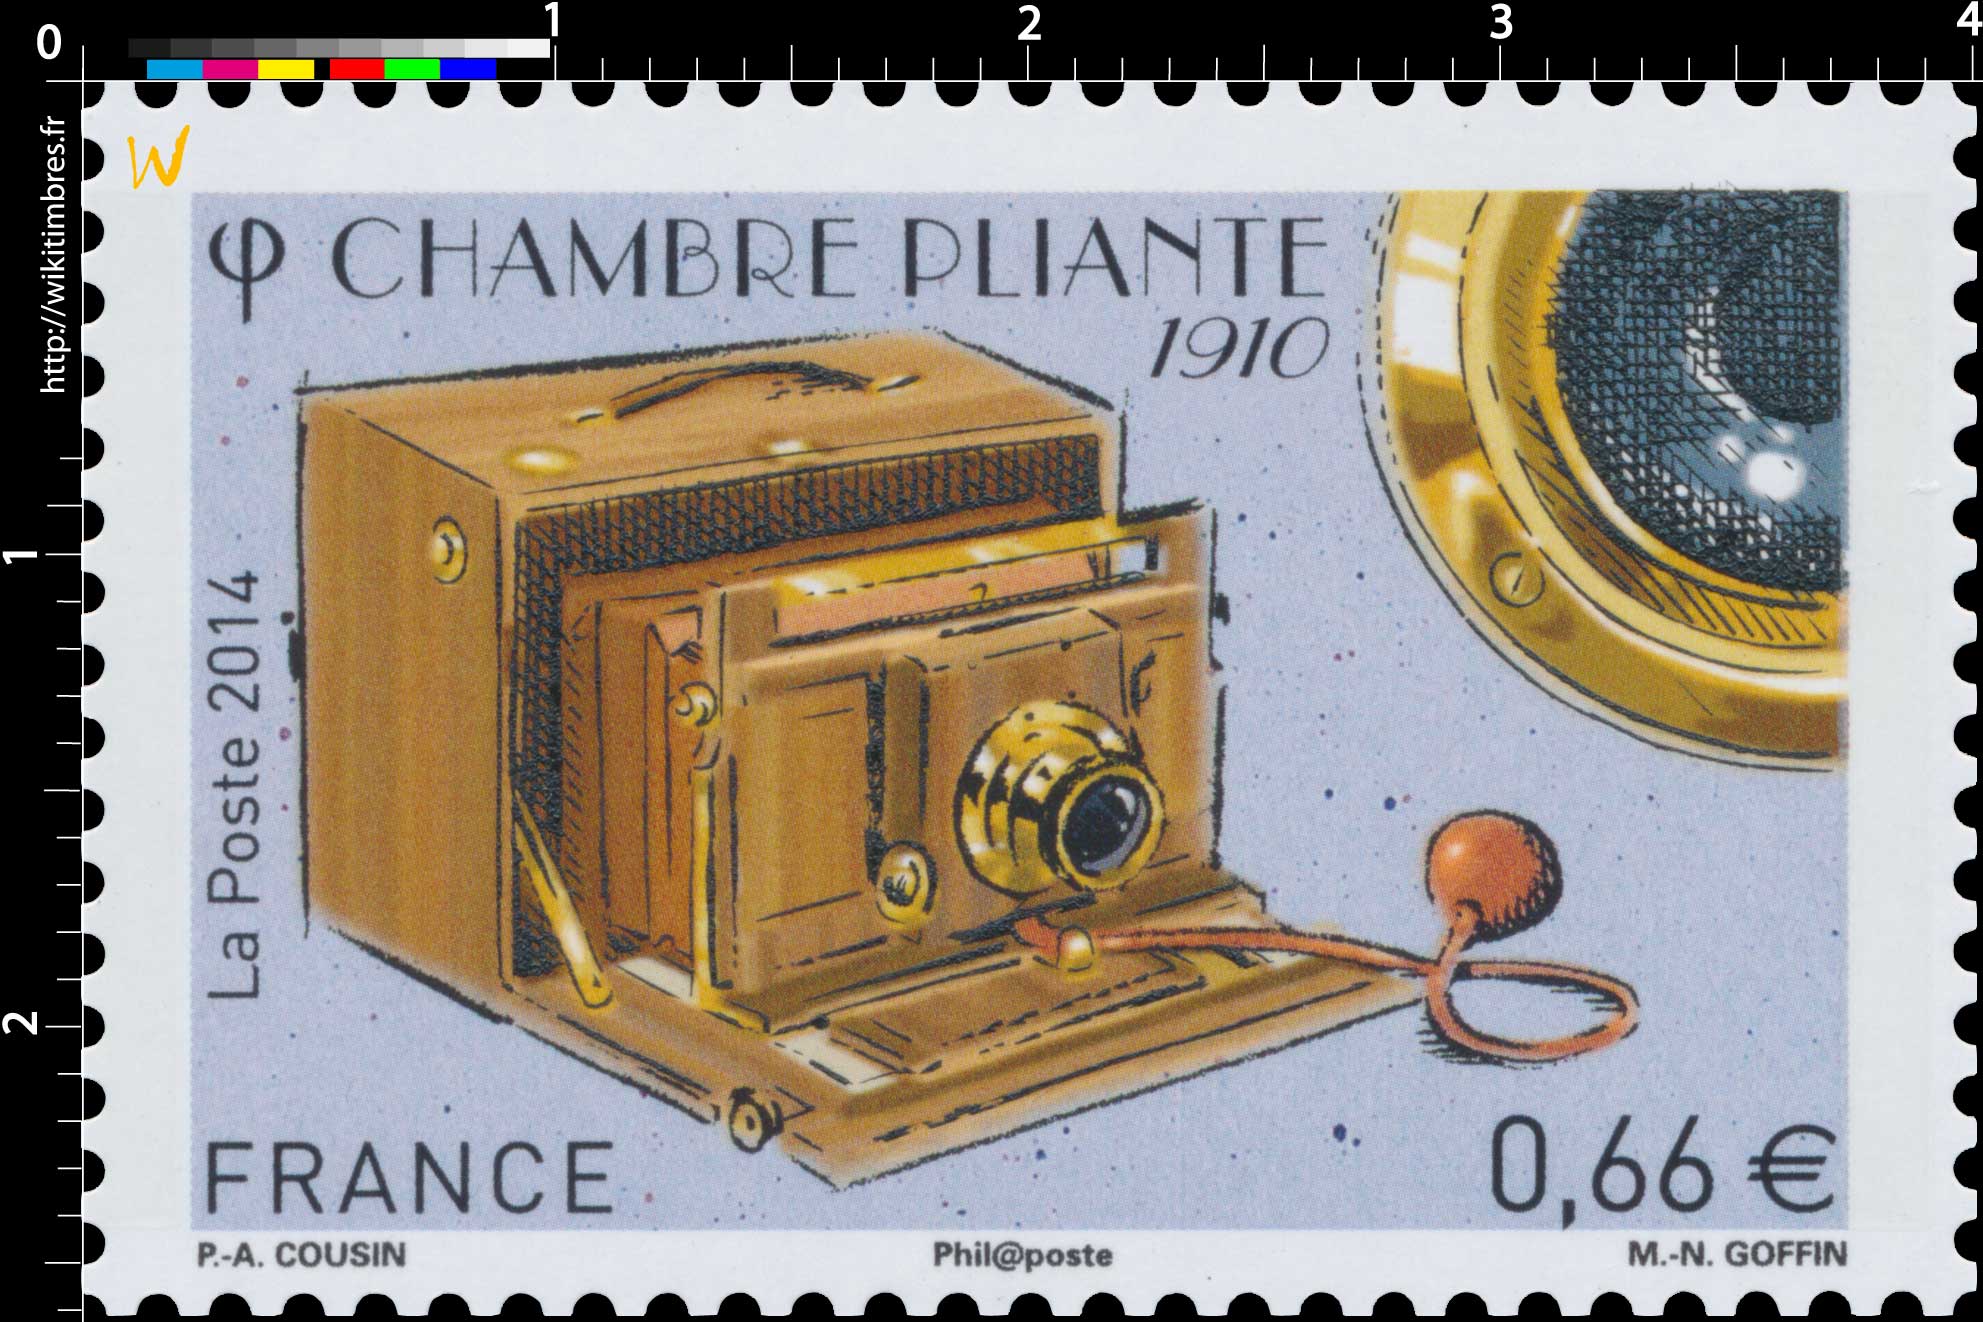 2014 CHAMBRE PLIANTE 1910